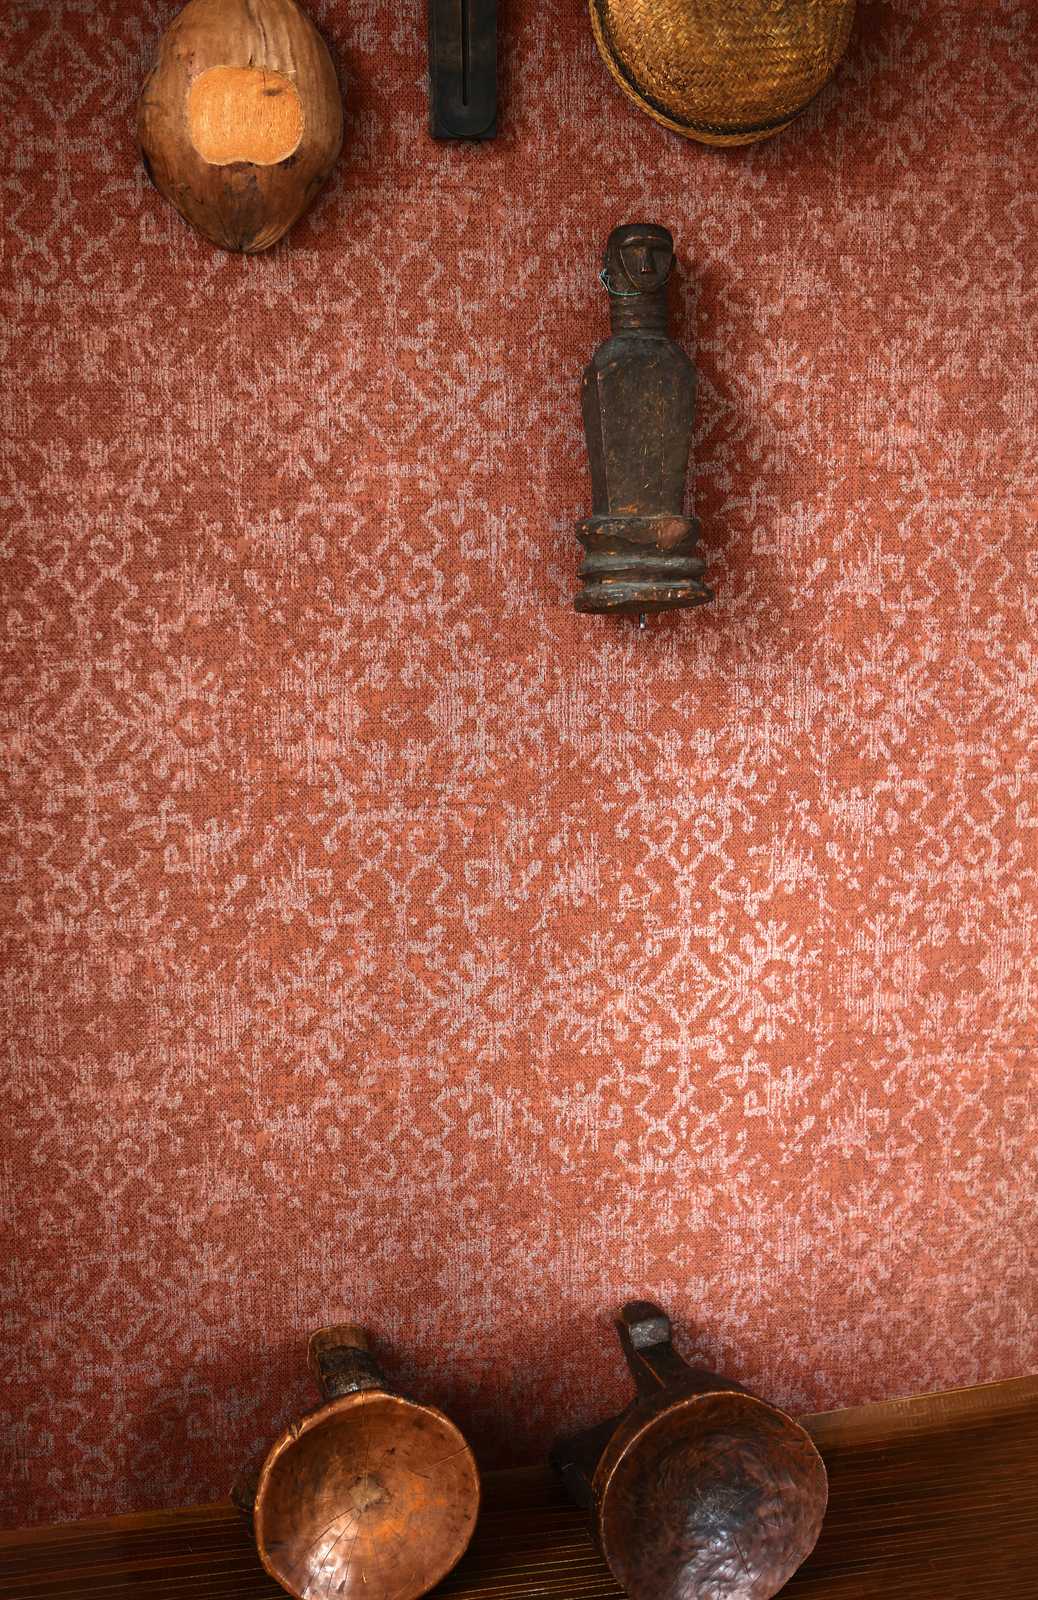             Wallpaper ornament design in Persian carpet look
        